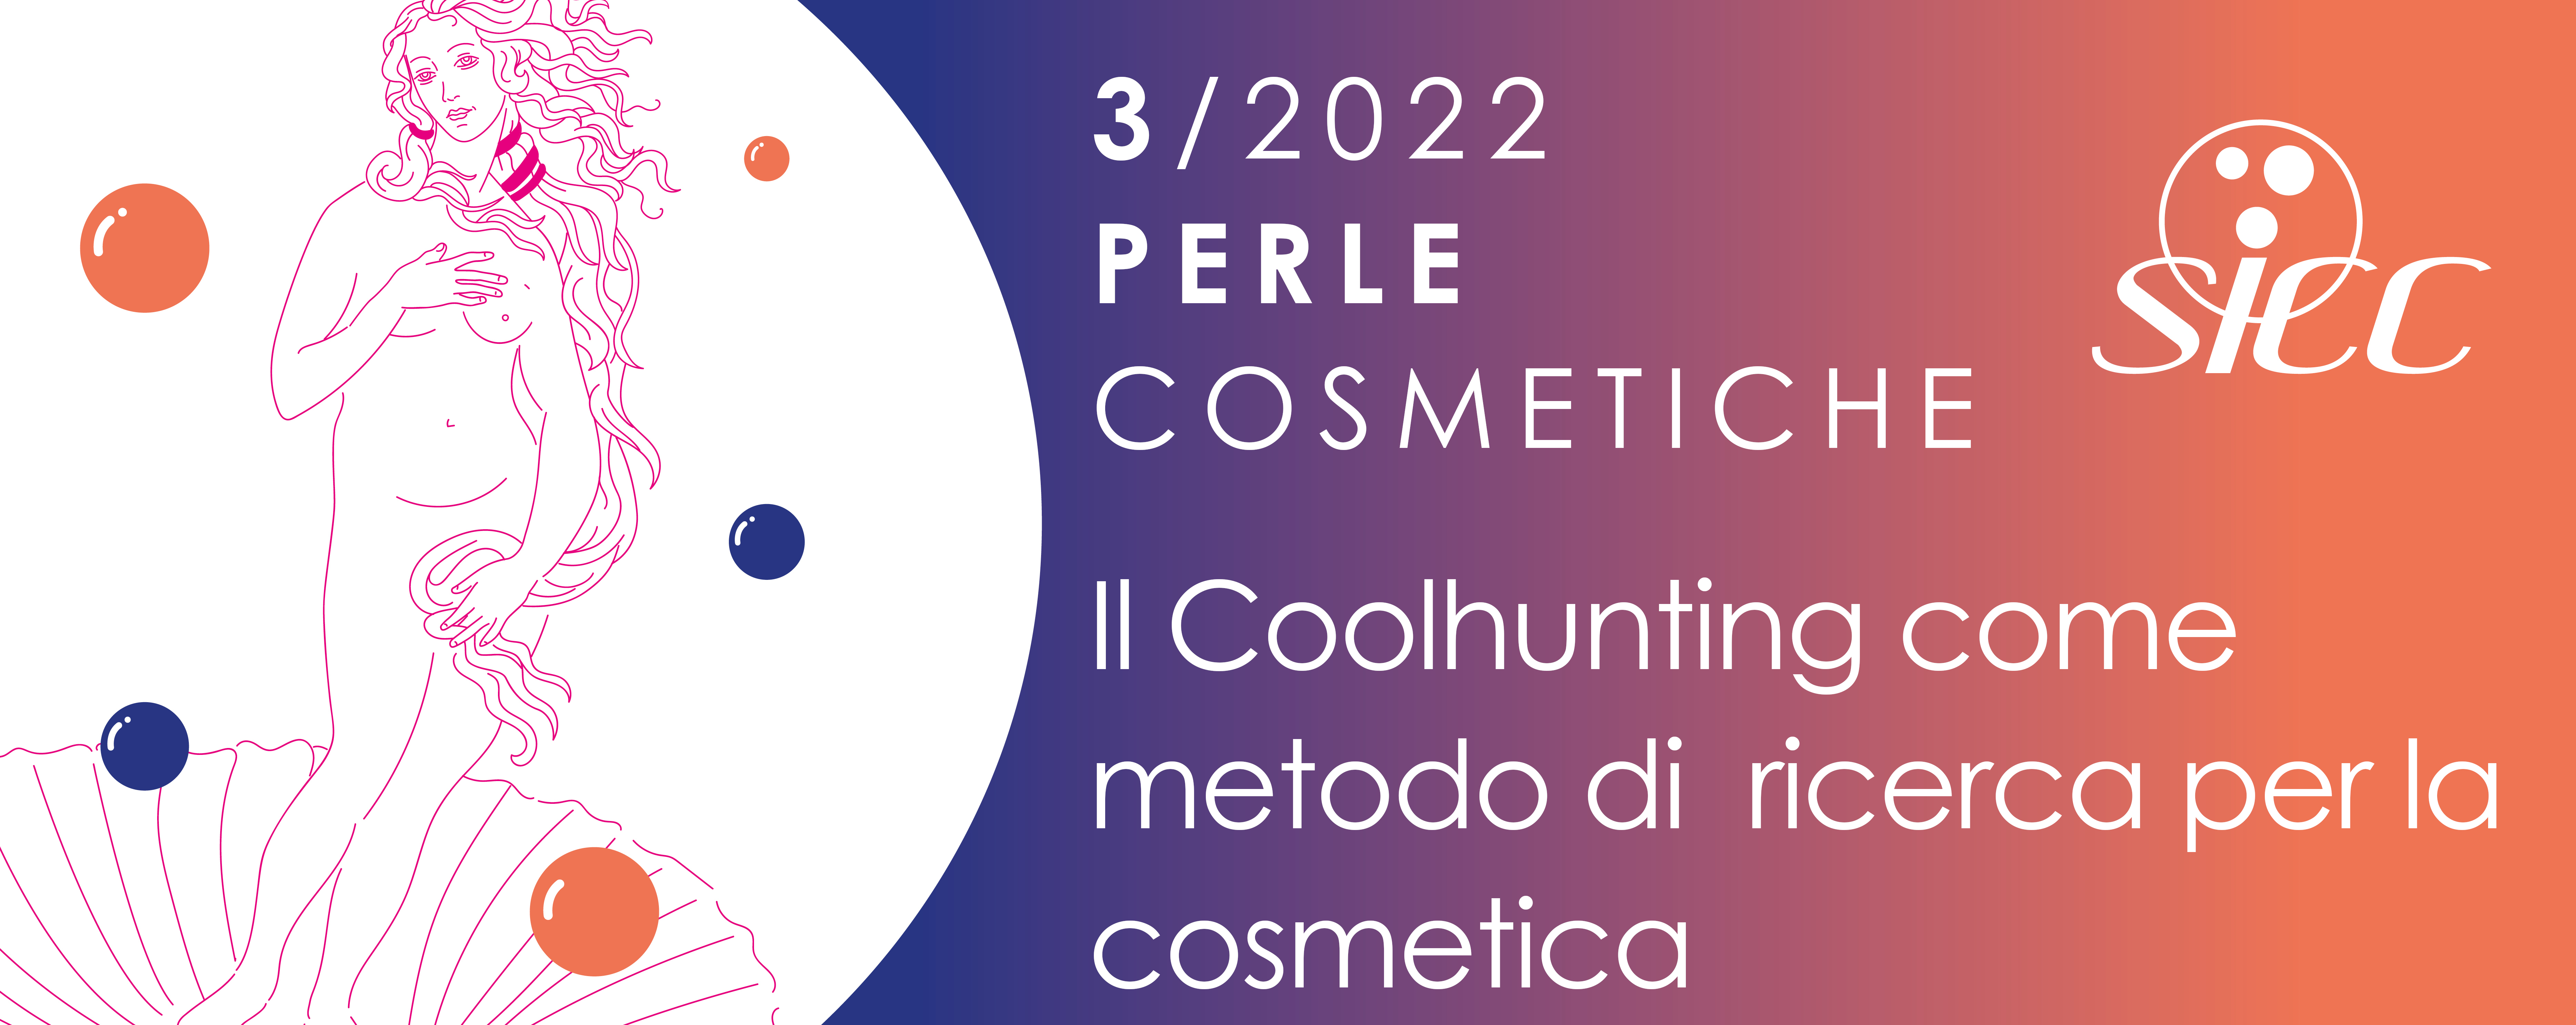 PERLA COSMETICA N. 3/2022: Il Coolhunting come metodo di ricerca per la cosmetica